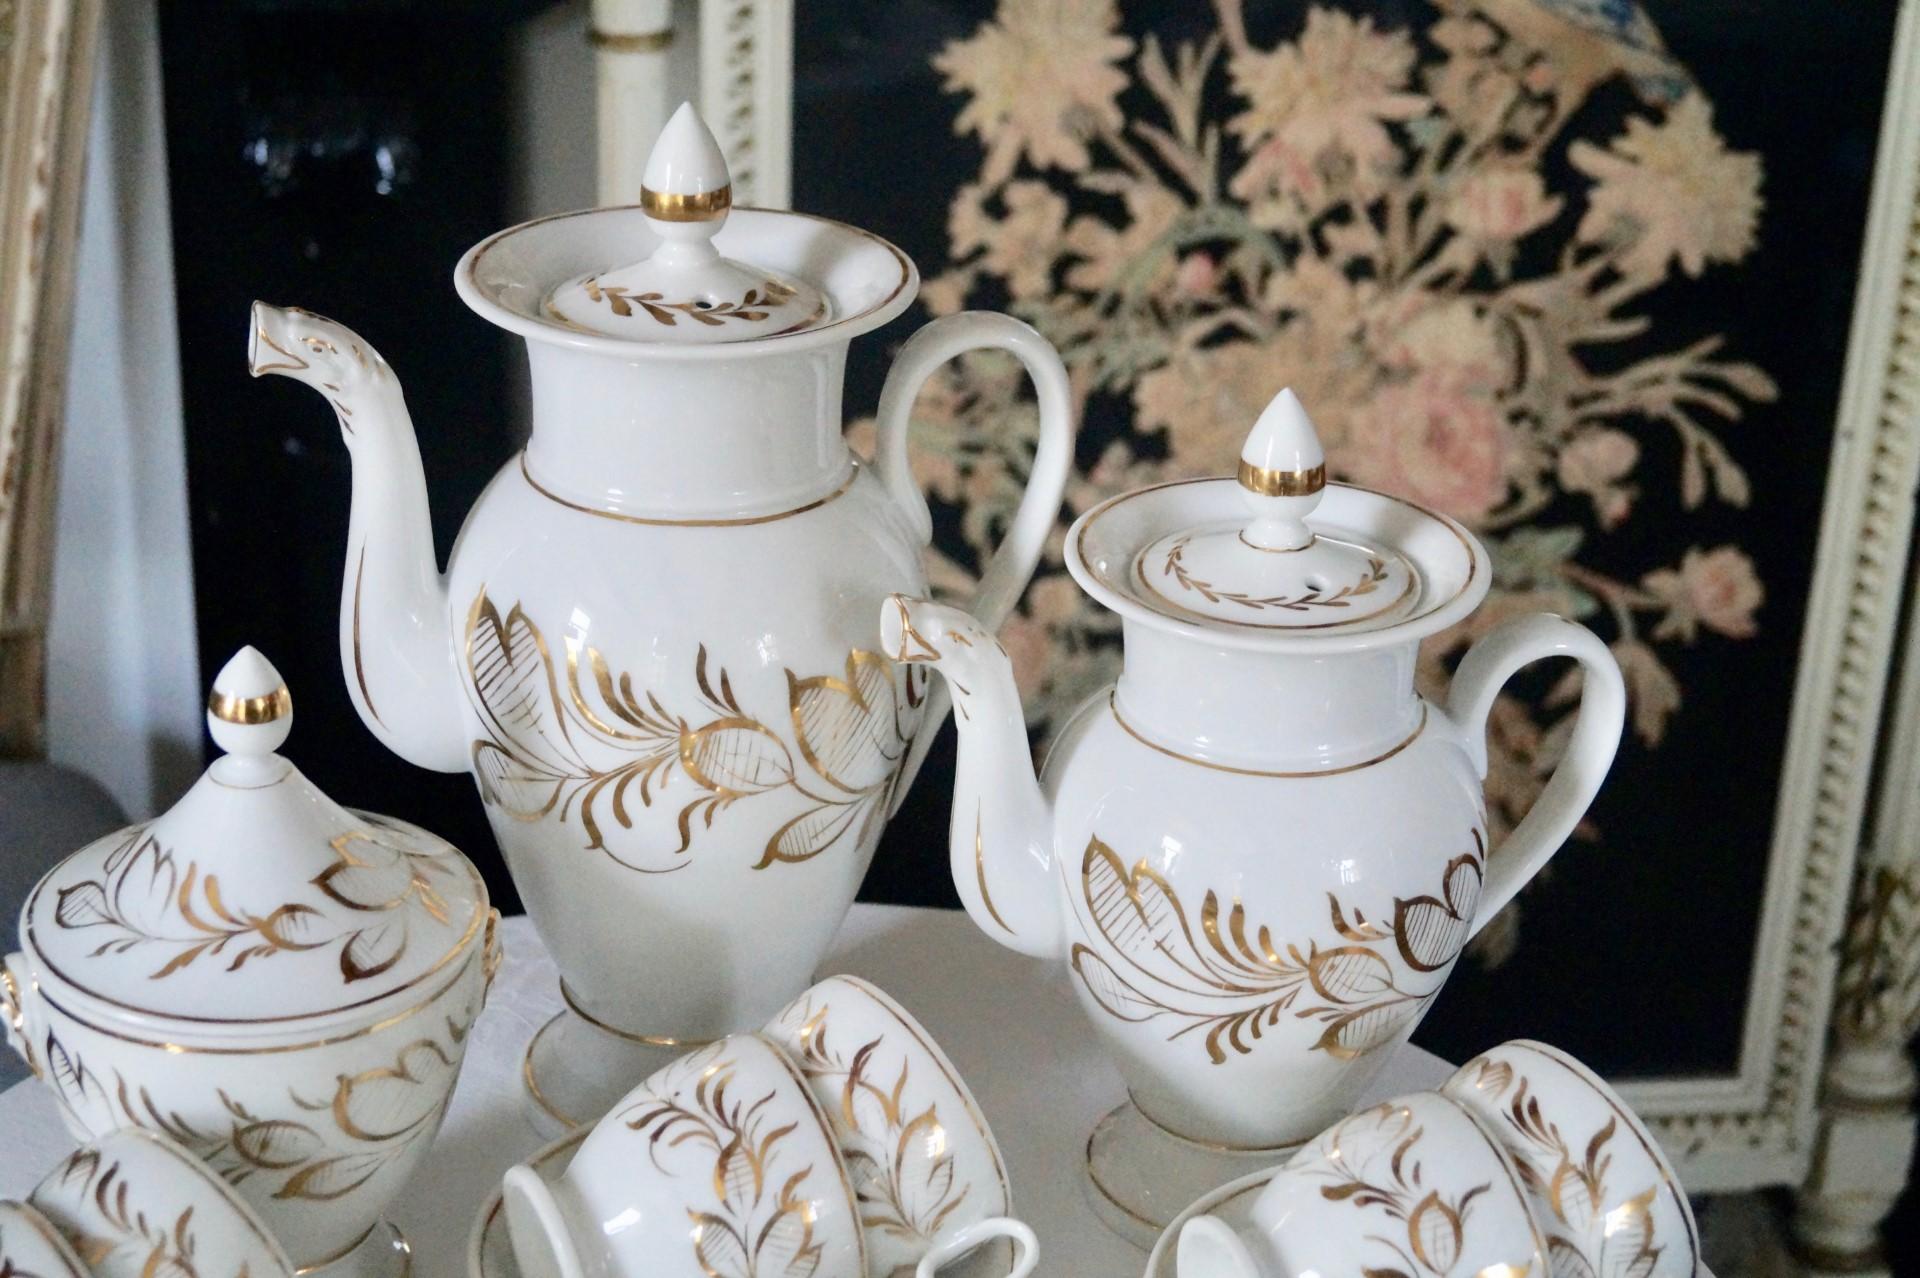 Magnifique service à café et à thé en porcelaine de Paris datant de 1850-1880 !

Très délicatement décorée à la main avec de l'or. 

Très bon état pour son âge, quelques usures d'or sont présentes. Malheureusement, le pot à lait a